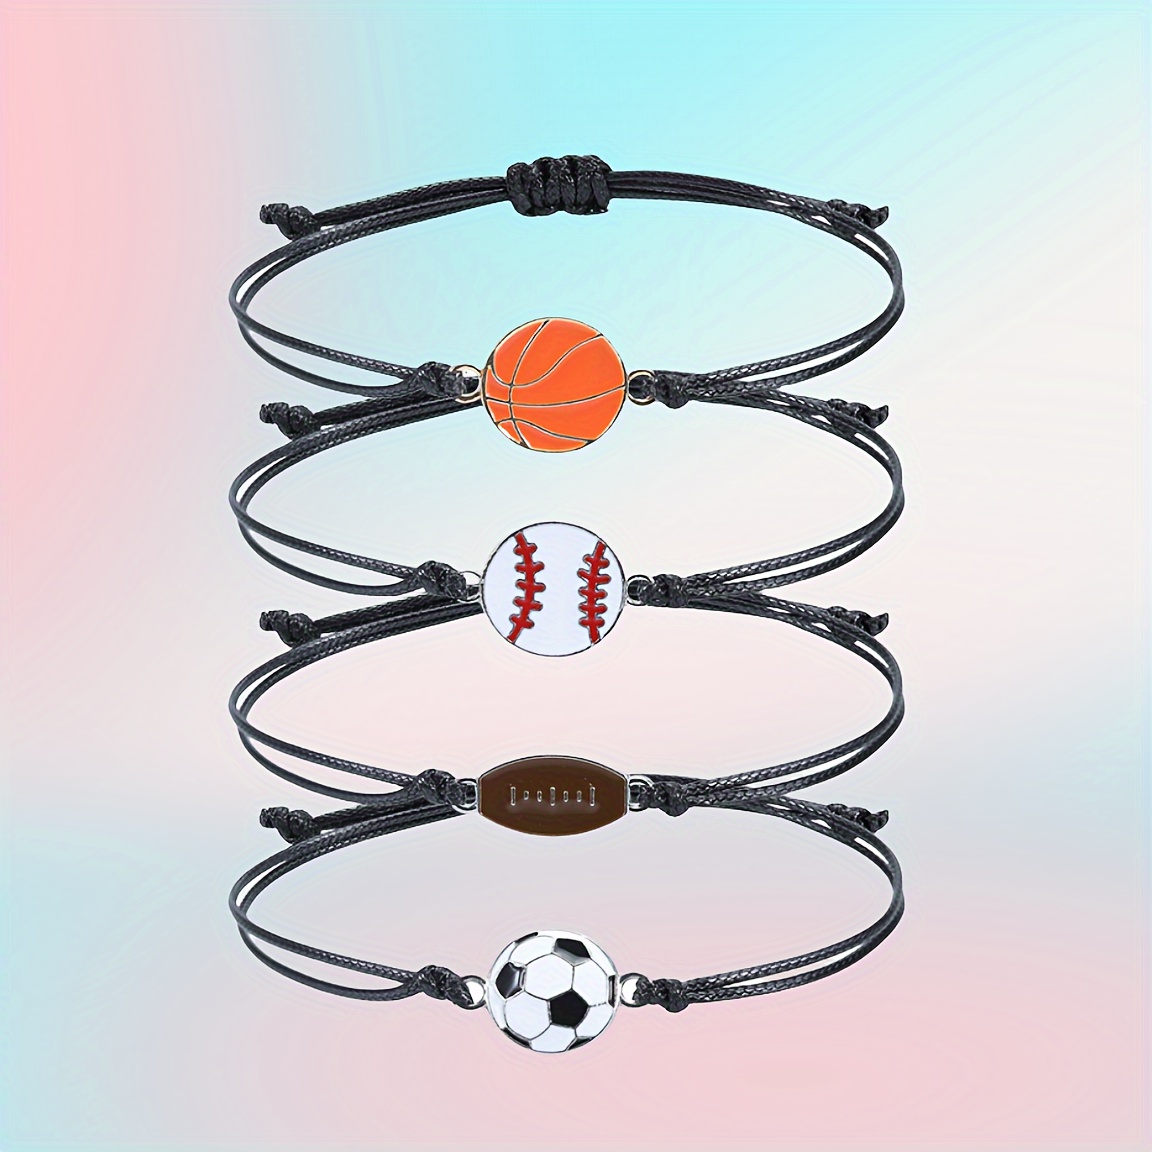 Bracelet Elastique En Acrylique Pour Homme Et Femme, Bijou A La Mode, Ideal  Pour Le Basket-ball, Le Football, Le Tennis - Bracelets